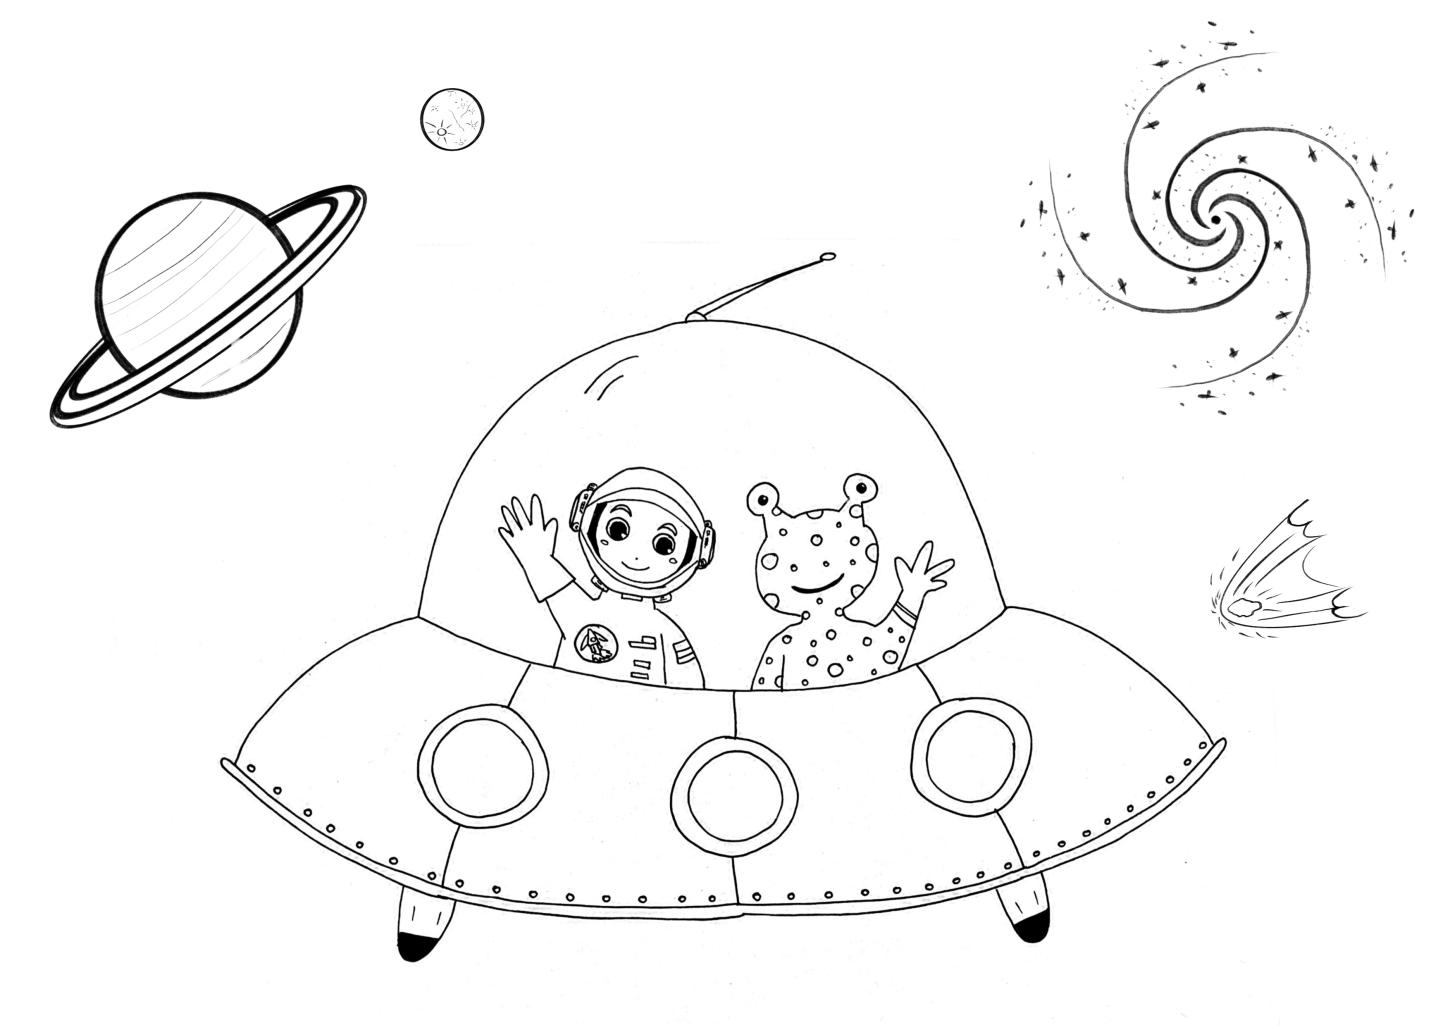 Ein Ufo mit Astronaut und Alien fliegt durch das Weltall. Im Hintergrund ist ein Planet mit Mond, Komet und Galaxie.